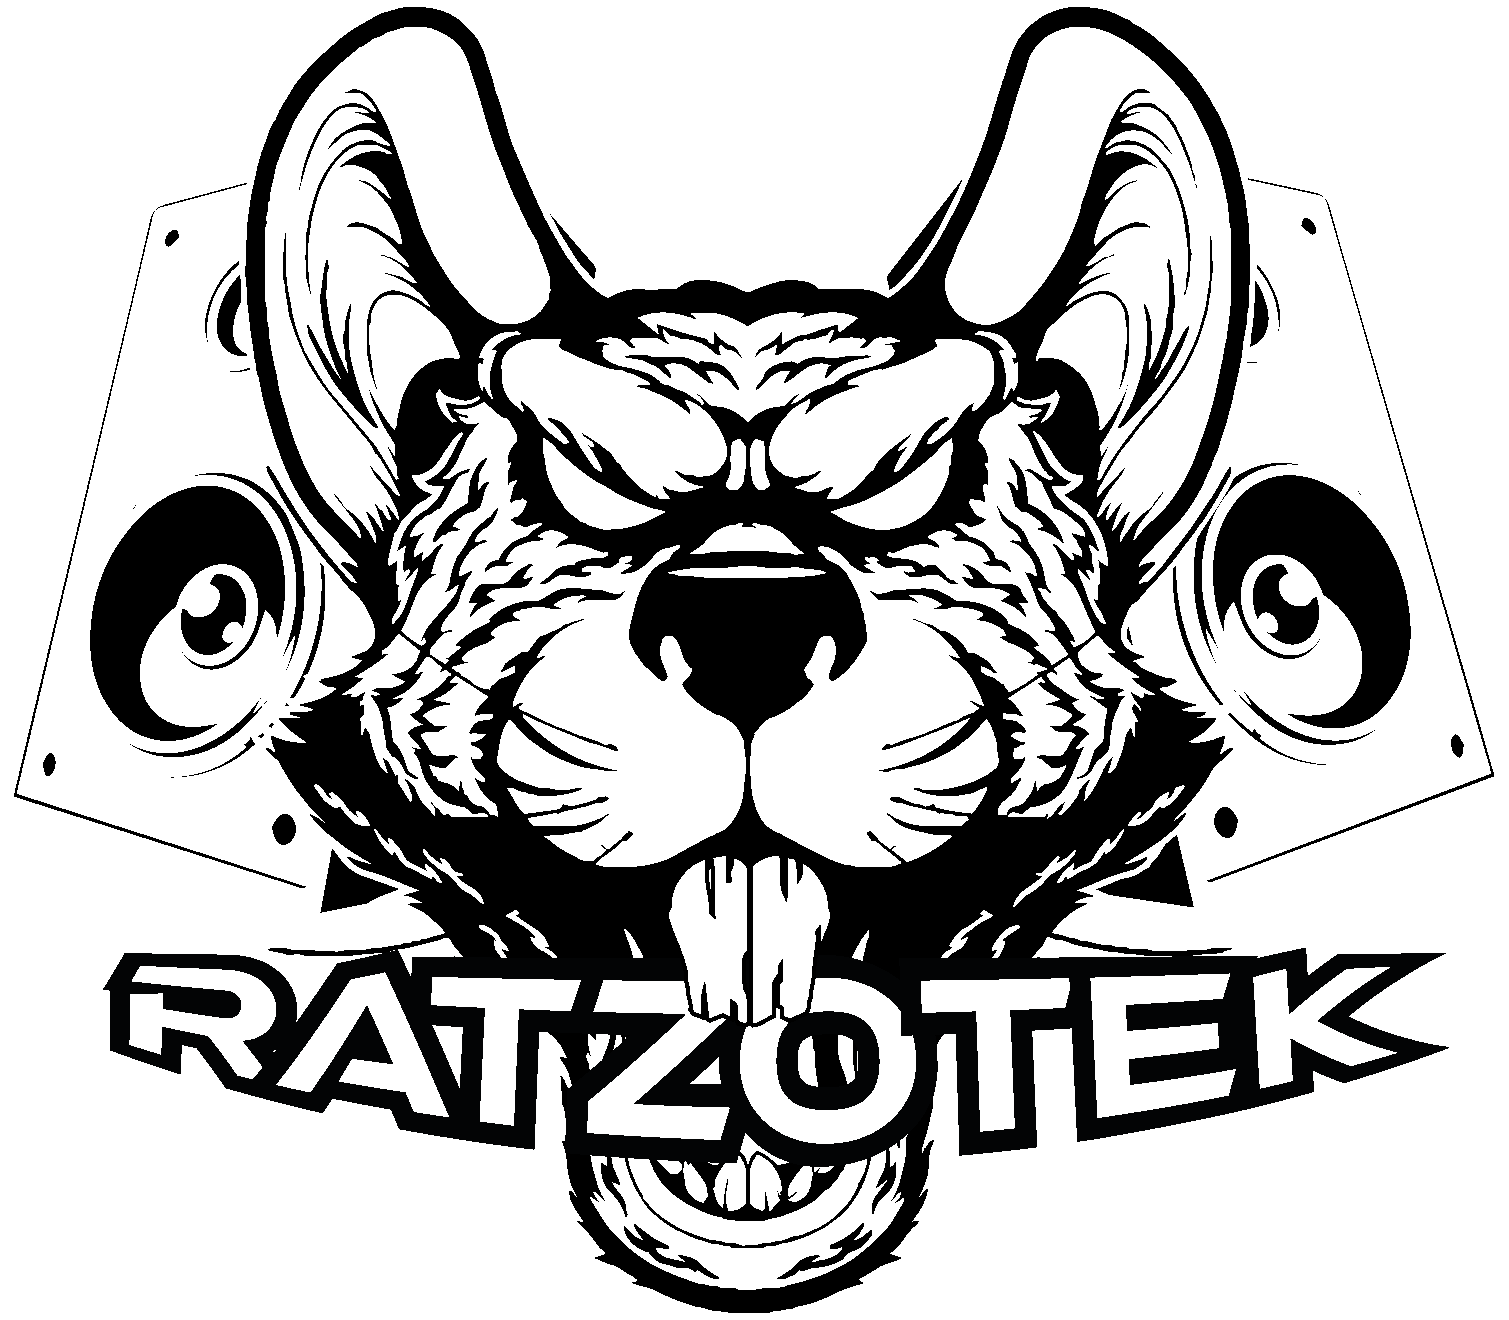 Ratzotek Production